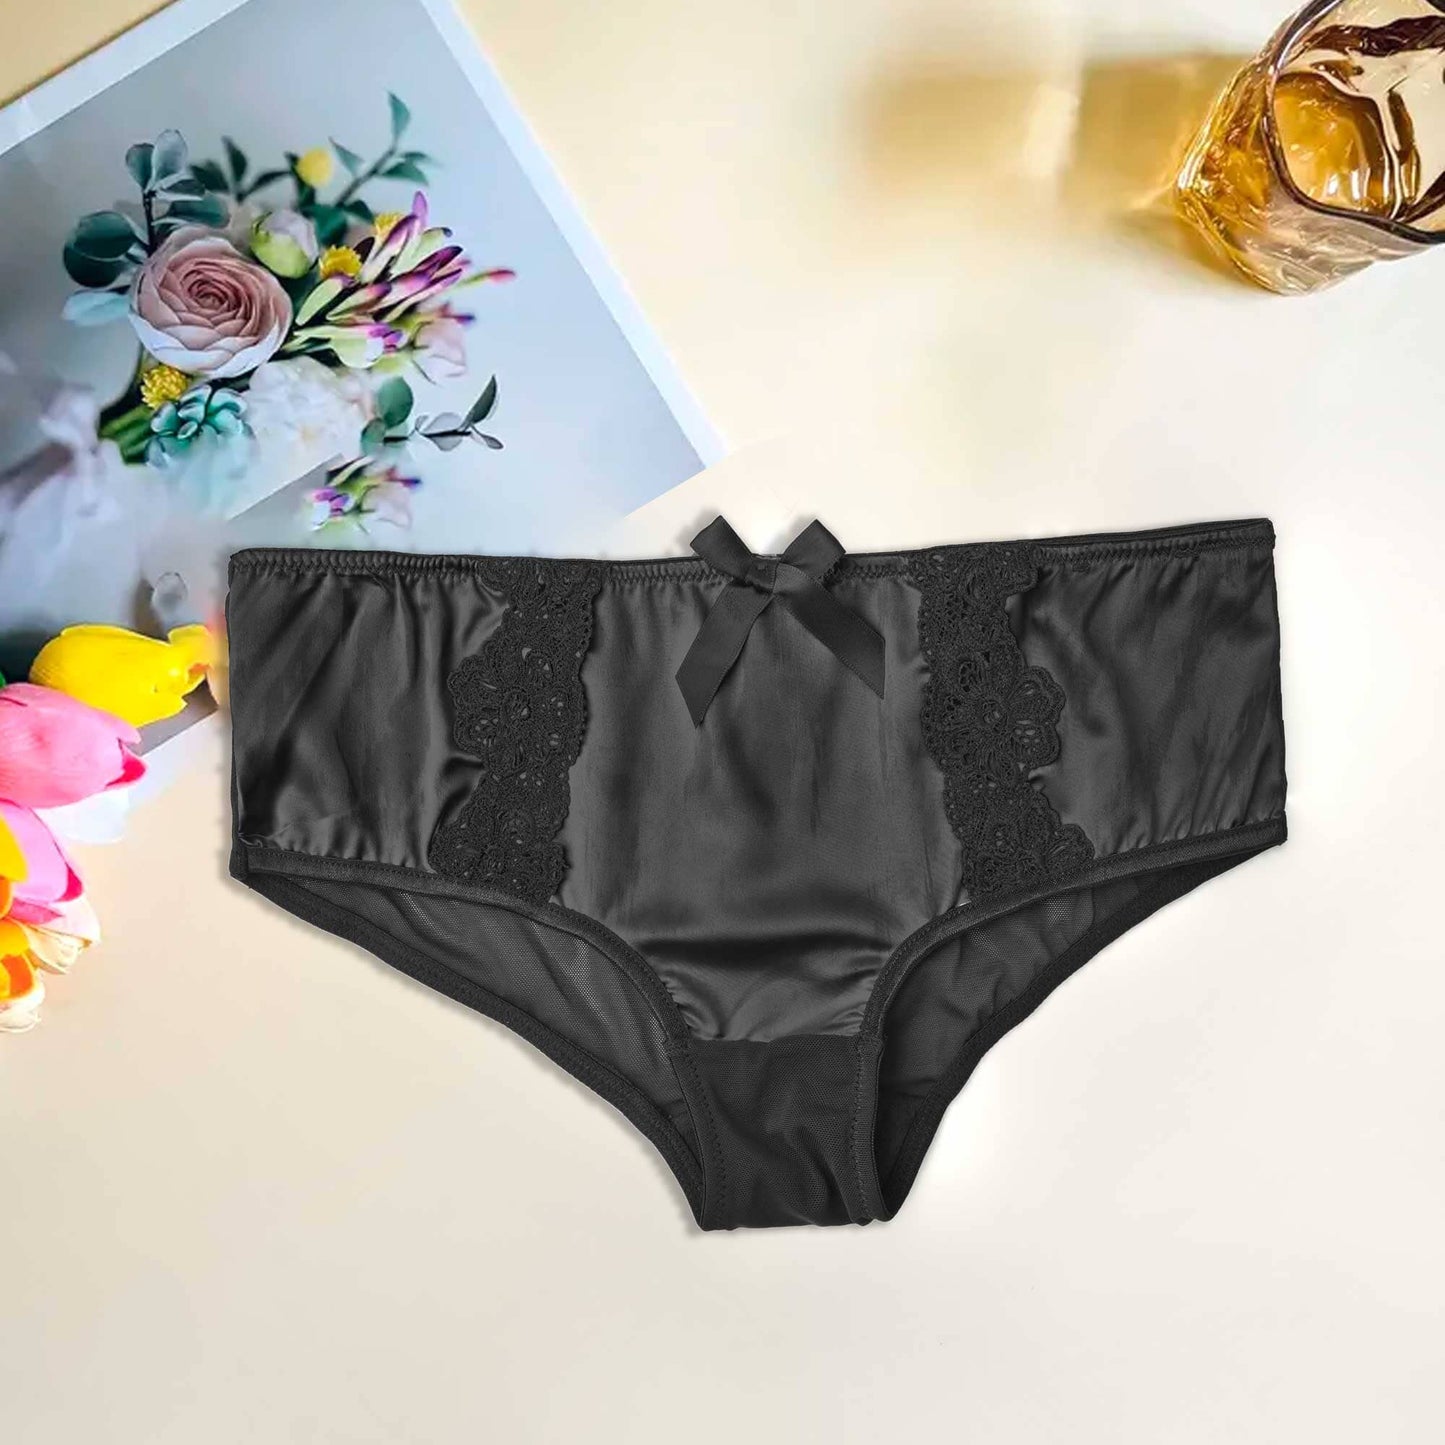 Mpz Women's Fancy Lace Design Silk Underwear Women's Lingerie RAM Black M 